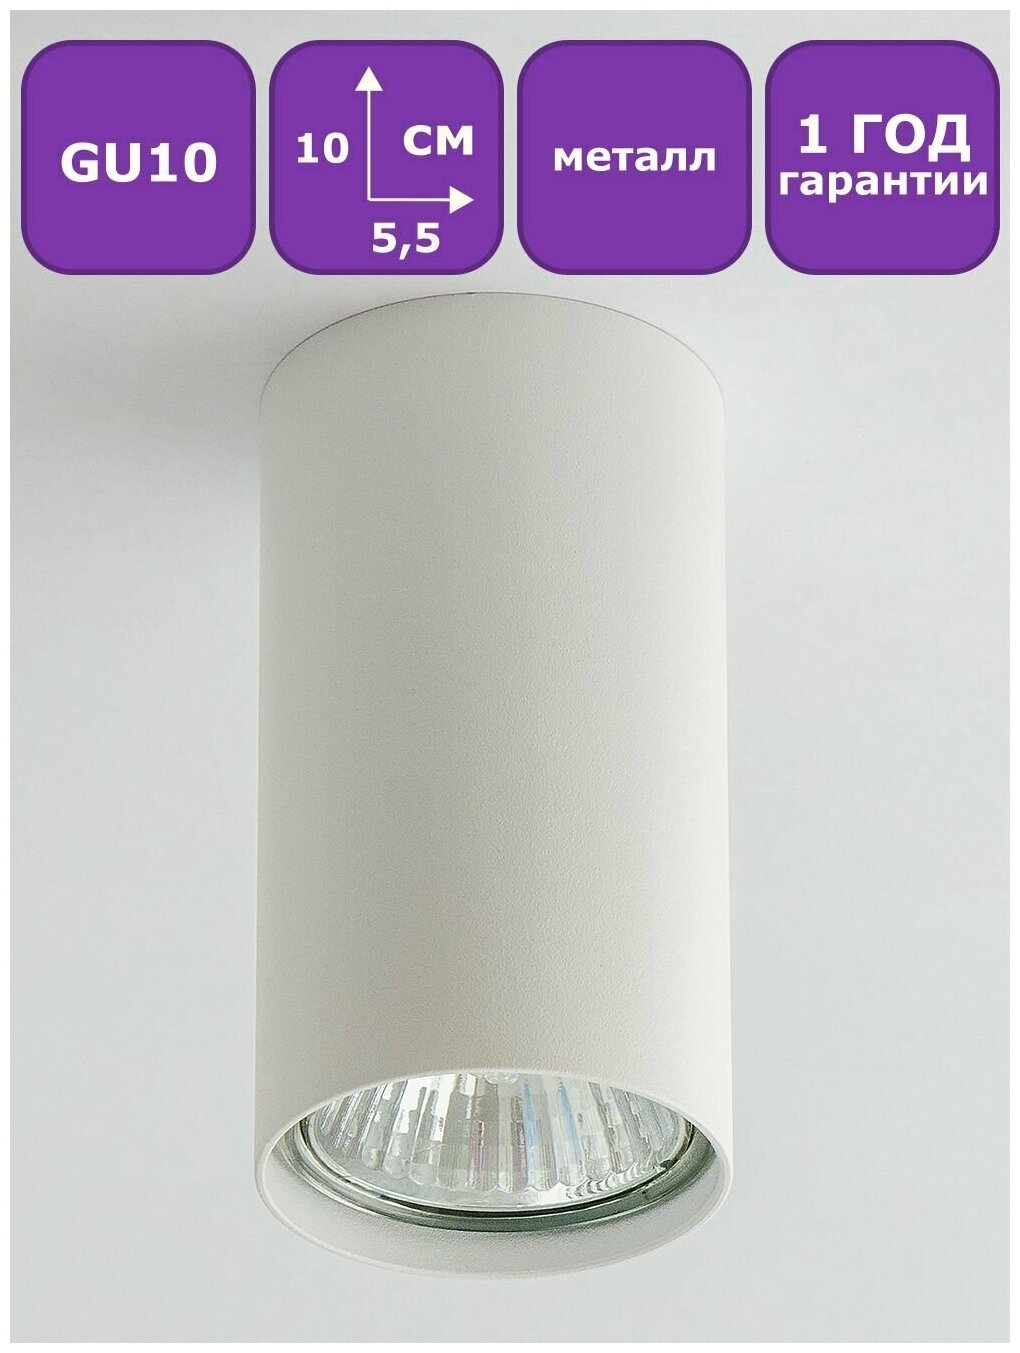 Светильник спот потолочный для натяжных потолков и обычных потолков, GU10, белый